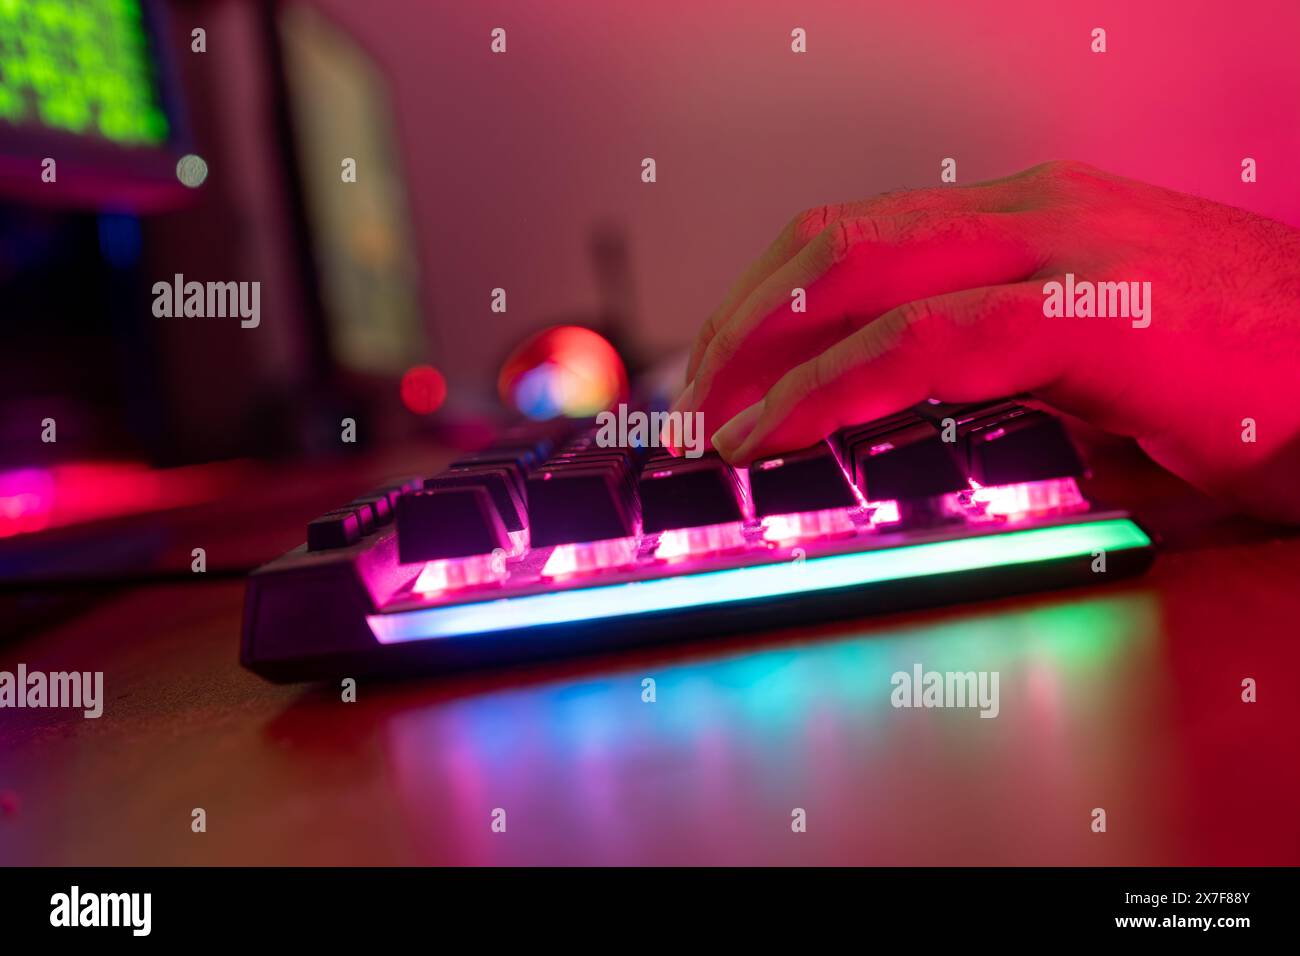 Professionelle online gamer Hand mechanische Tastatur in Neon Farben verwischen Hintergrund. Soft Focus, Ansicht von hinten. Stockfoto